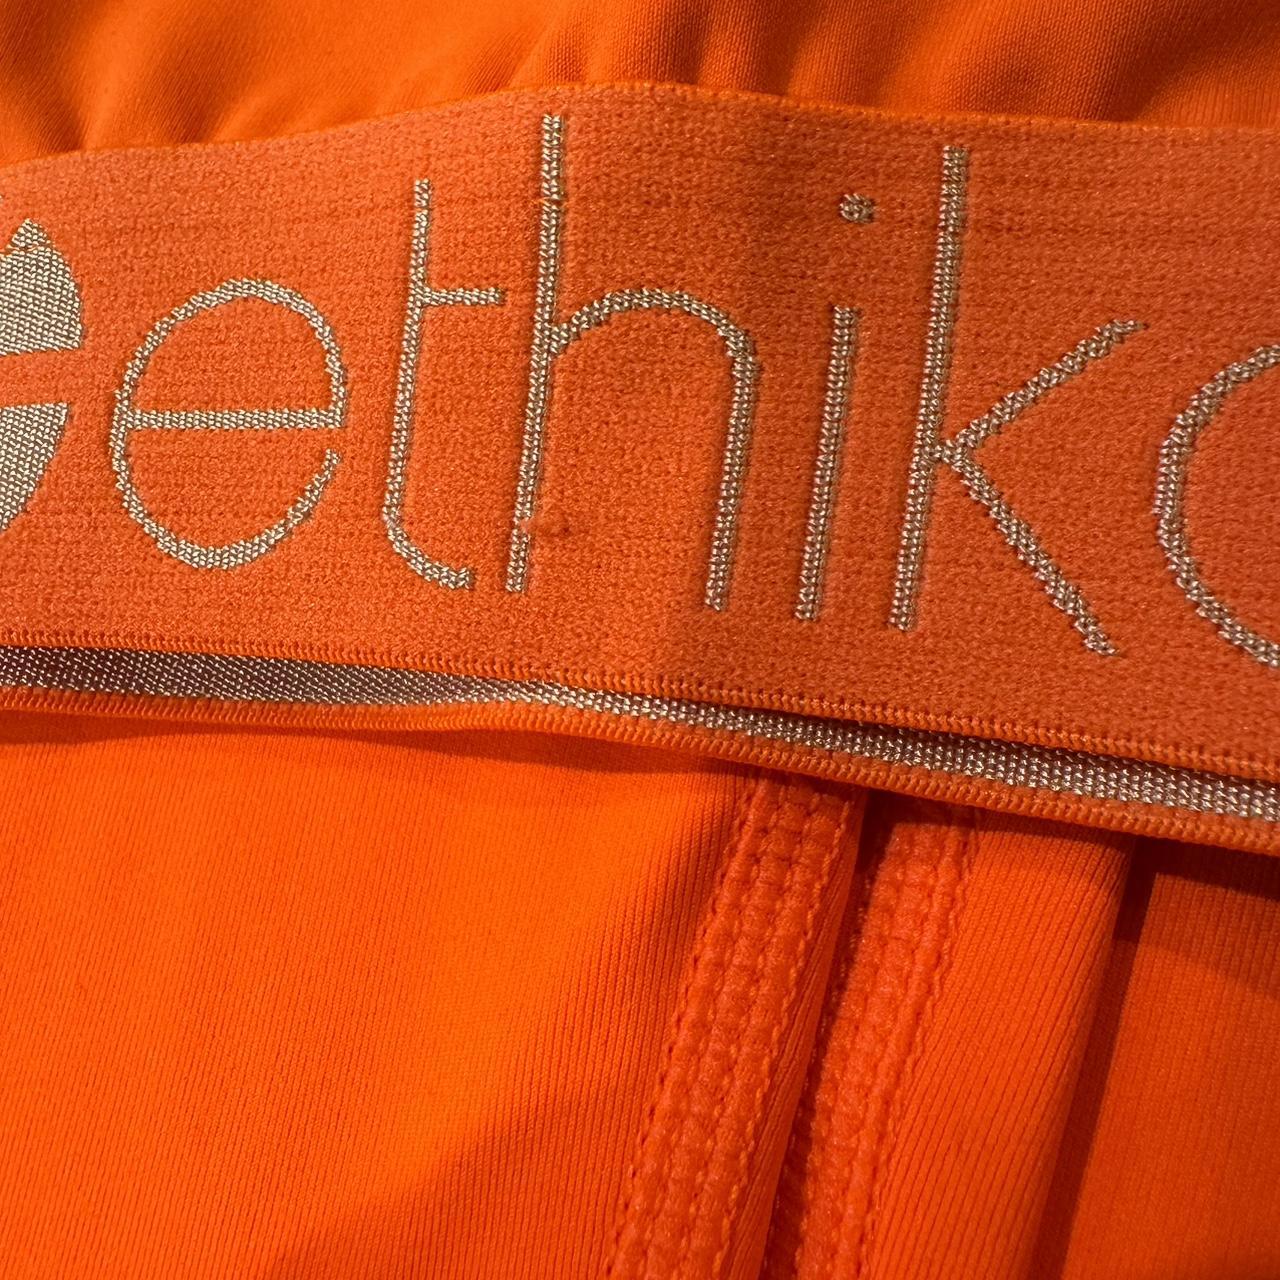 Ethika shorts #ethika #orange #lounge - Depop